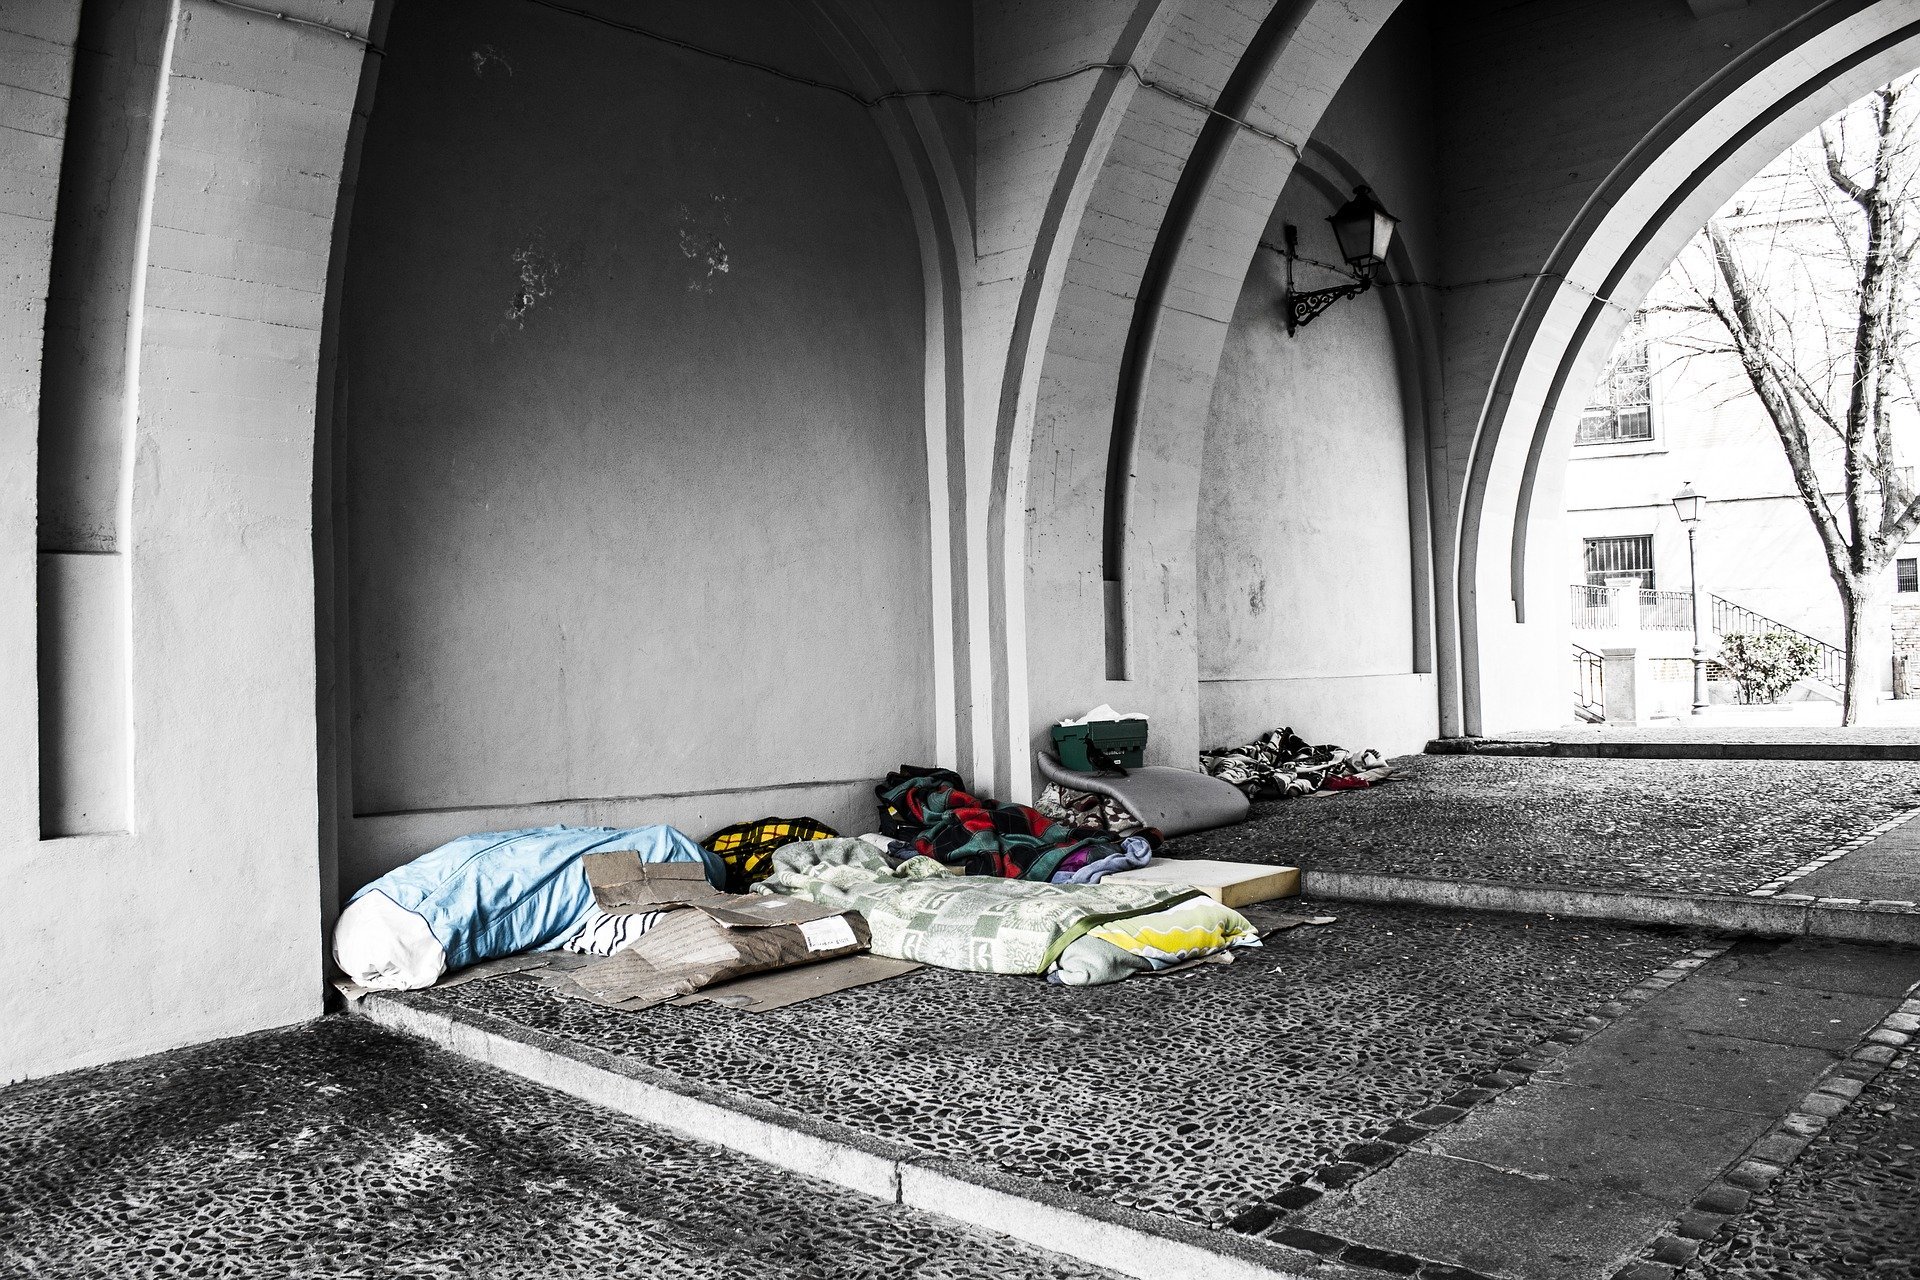 homeless 2090507 1920.jpg?resize=412,275 - Plus de 500 enfants dorment chaque nuit dans la rue à Paris